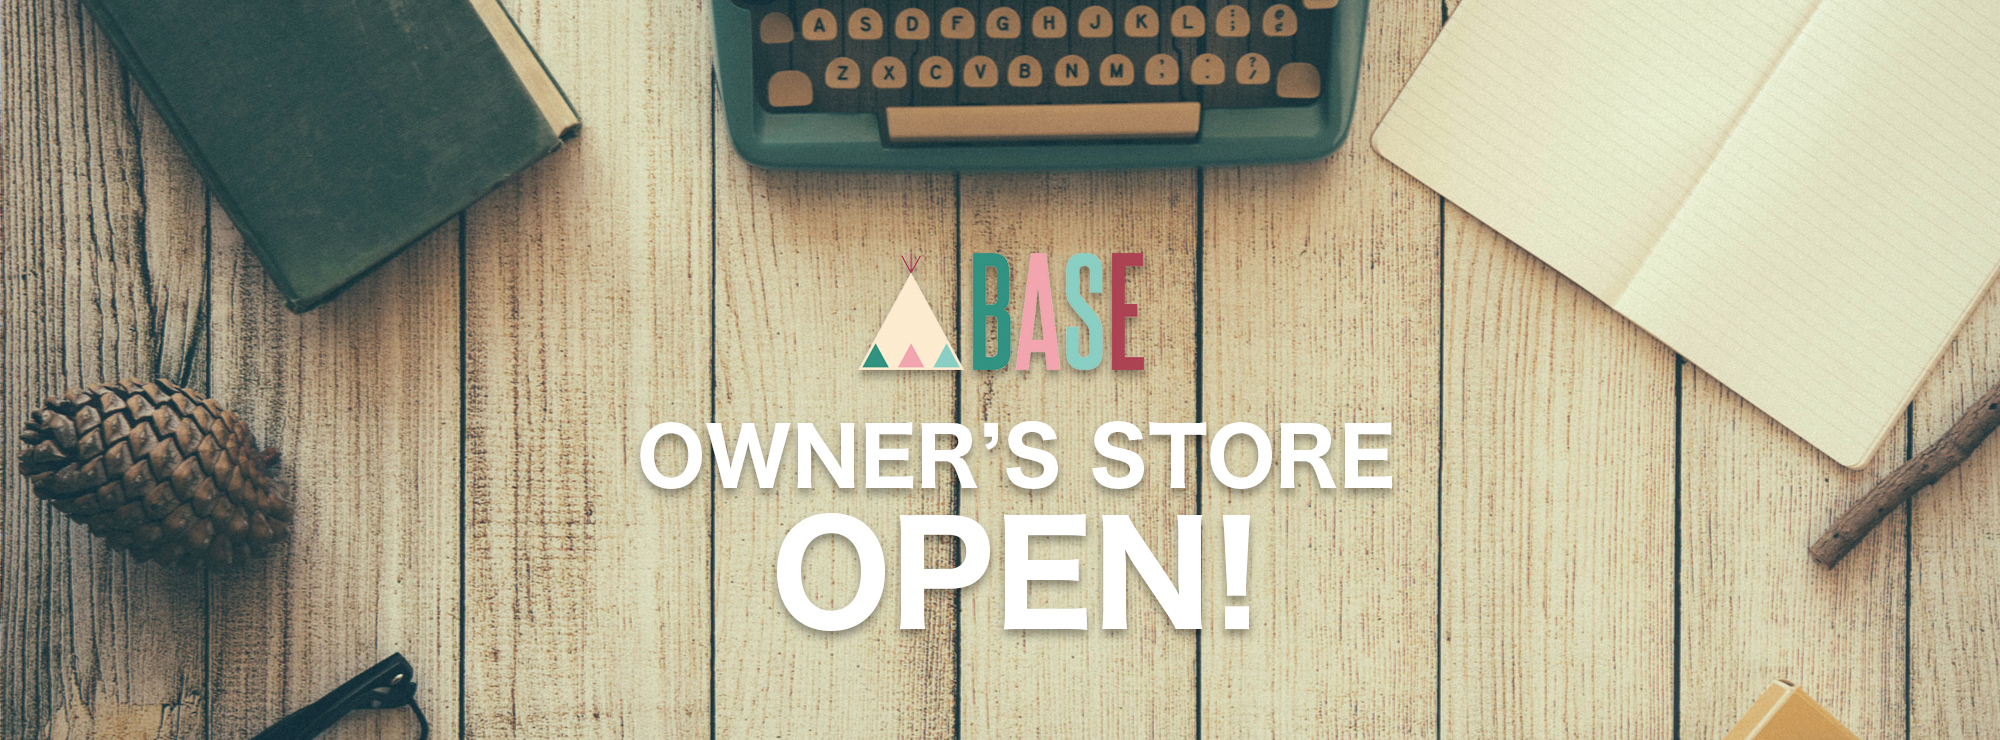 本日よりBASEオーナー様専用のショッピングサイトをオープンいたします